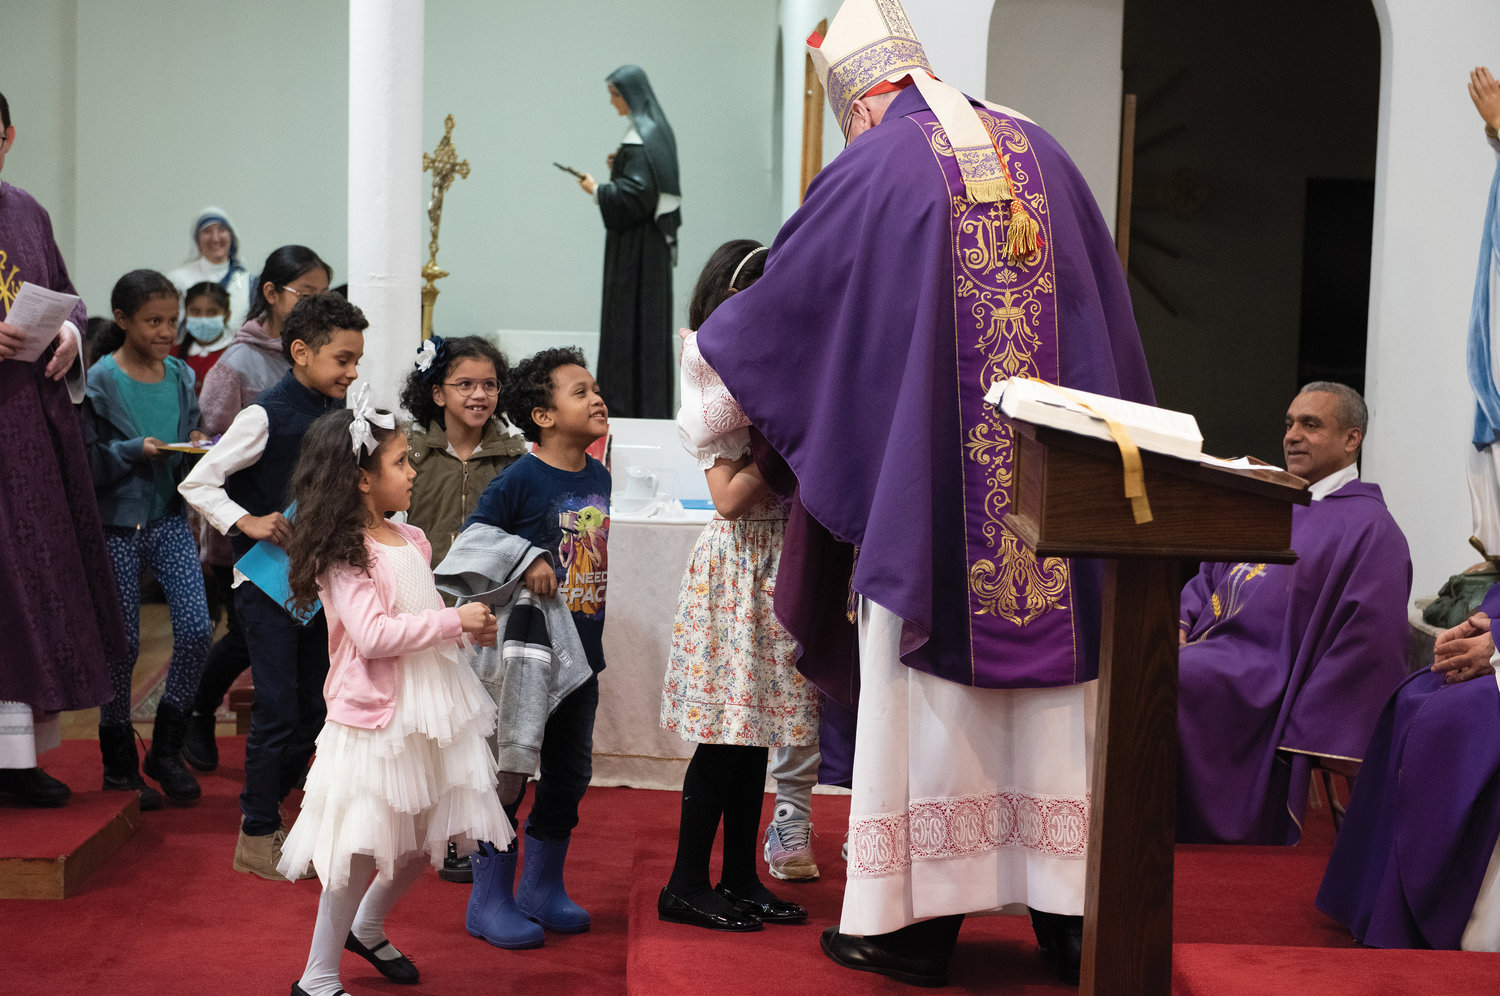 El cardenal Dolan recibe regalos de niños alegres después de la misa que él celebró. Los niños hicieron dibujos de Beato Carlo para la ocasión.